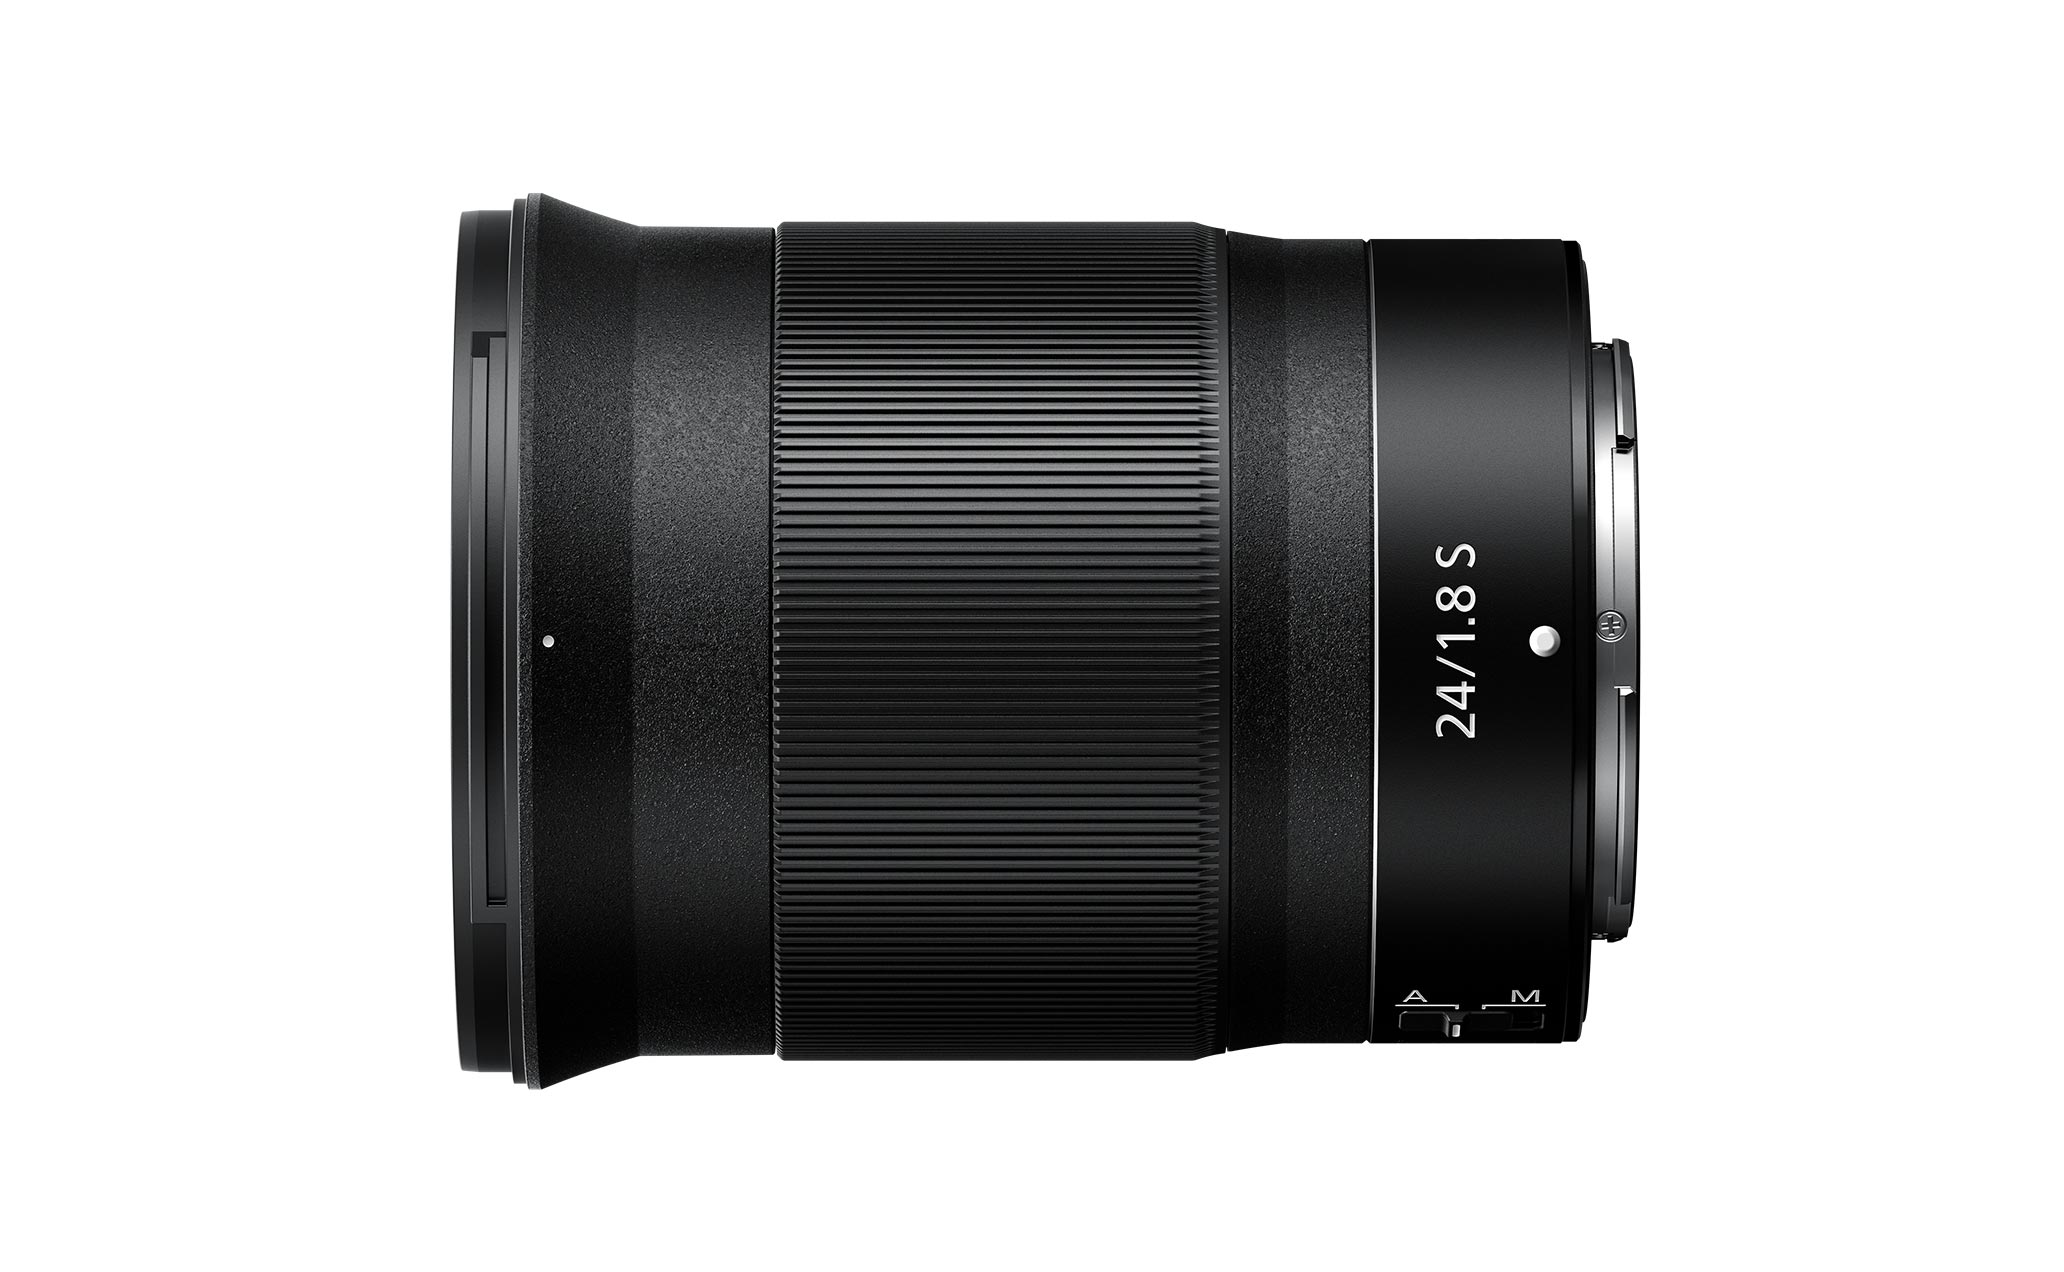 NIKKOR Z 24mm f/1.8 S | Z mount Lenses | Nikon Consumer